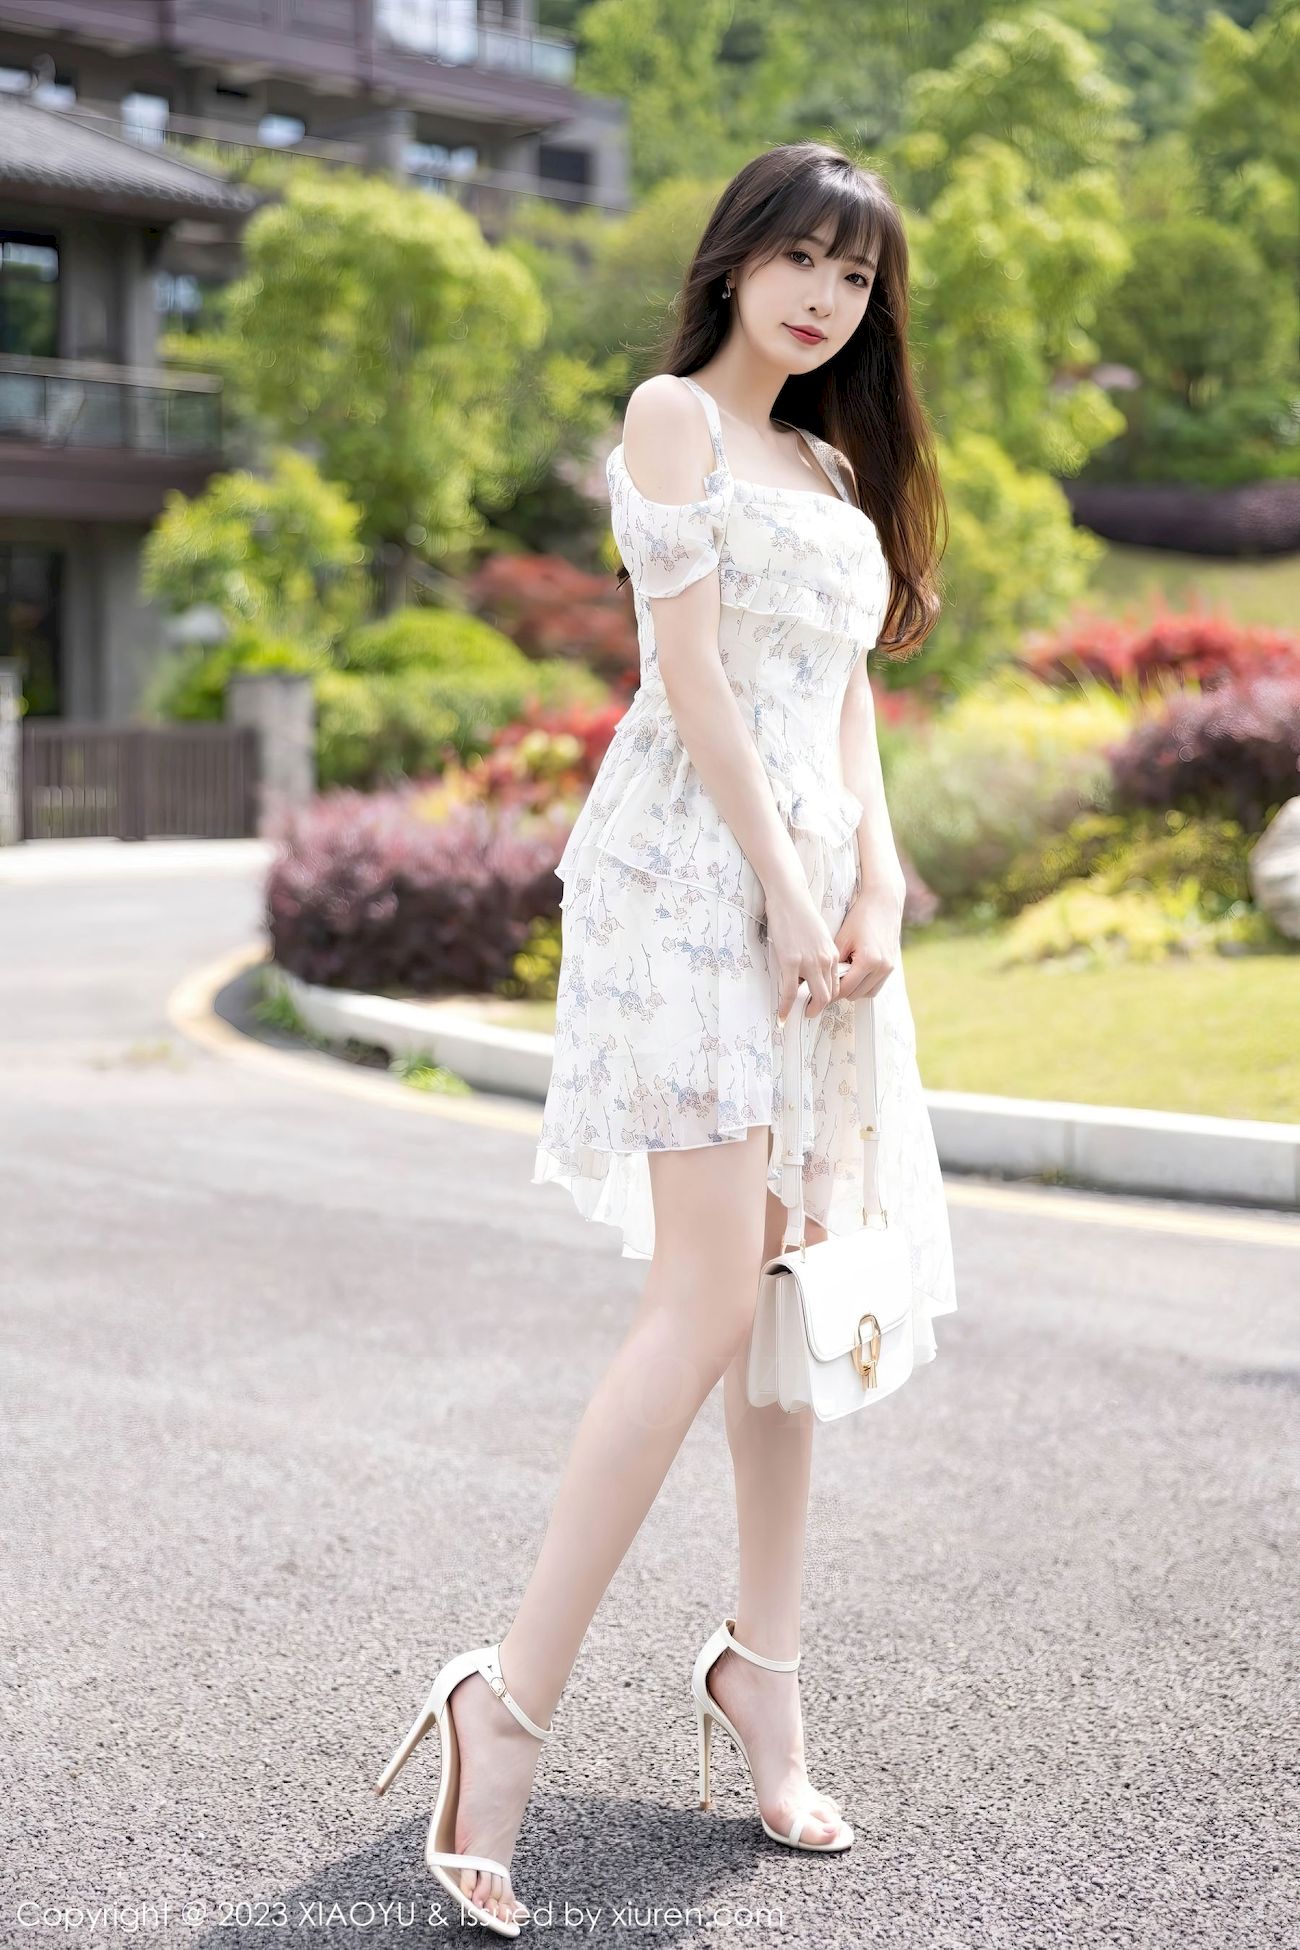 林星阑 - 婚纱服饰+白色丝袜贵州旅拍 